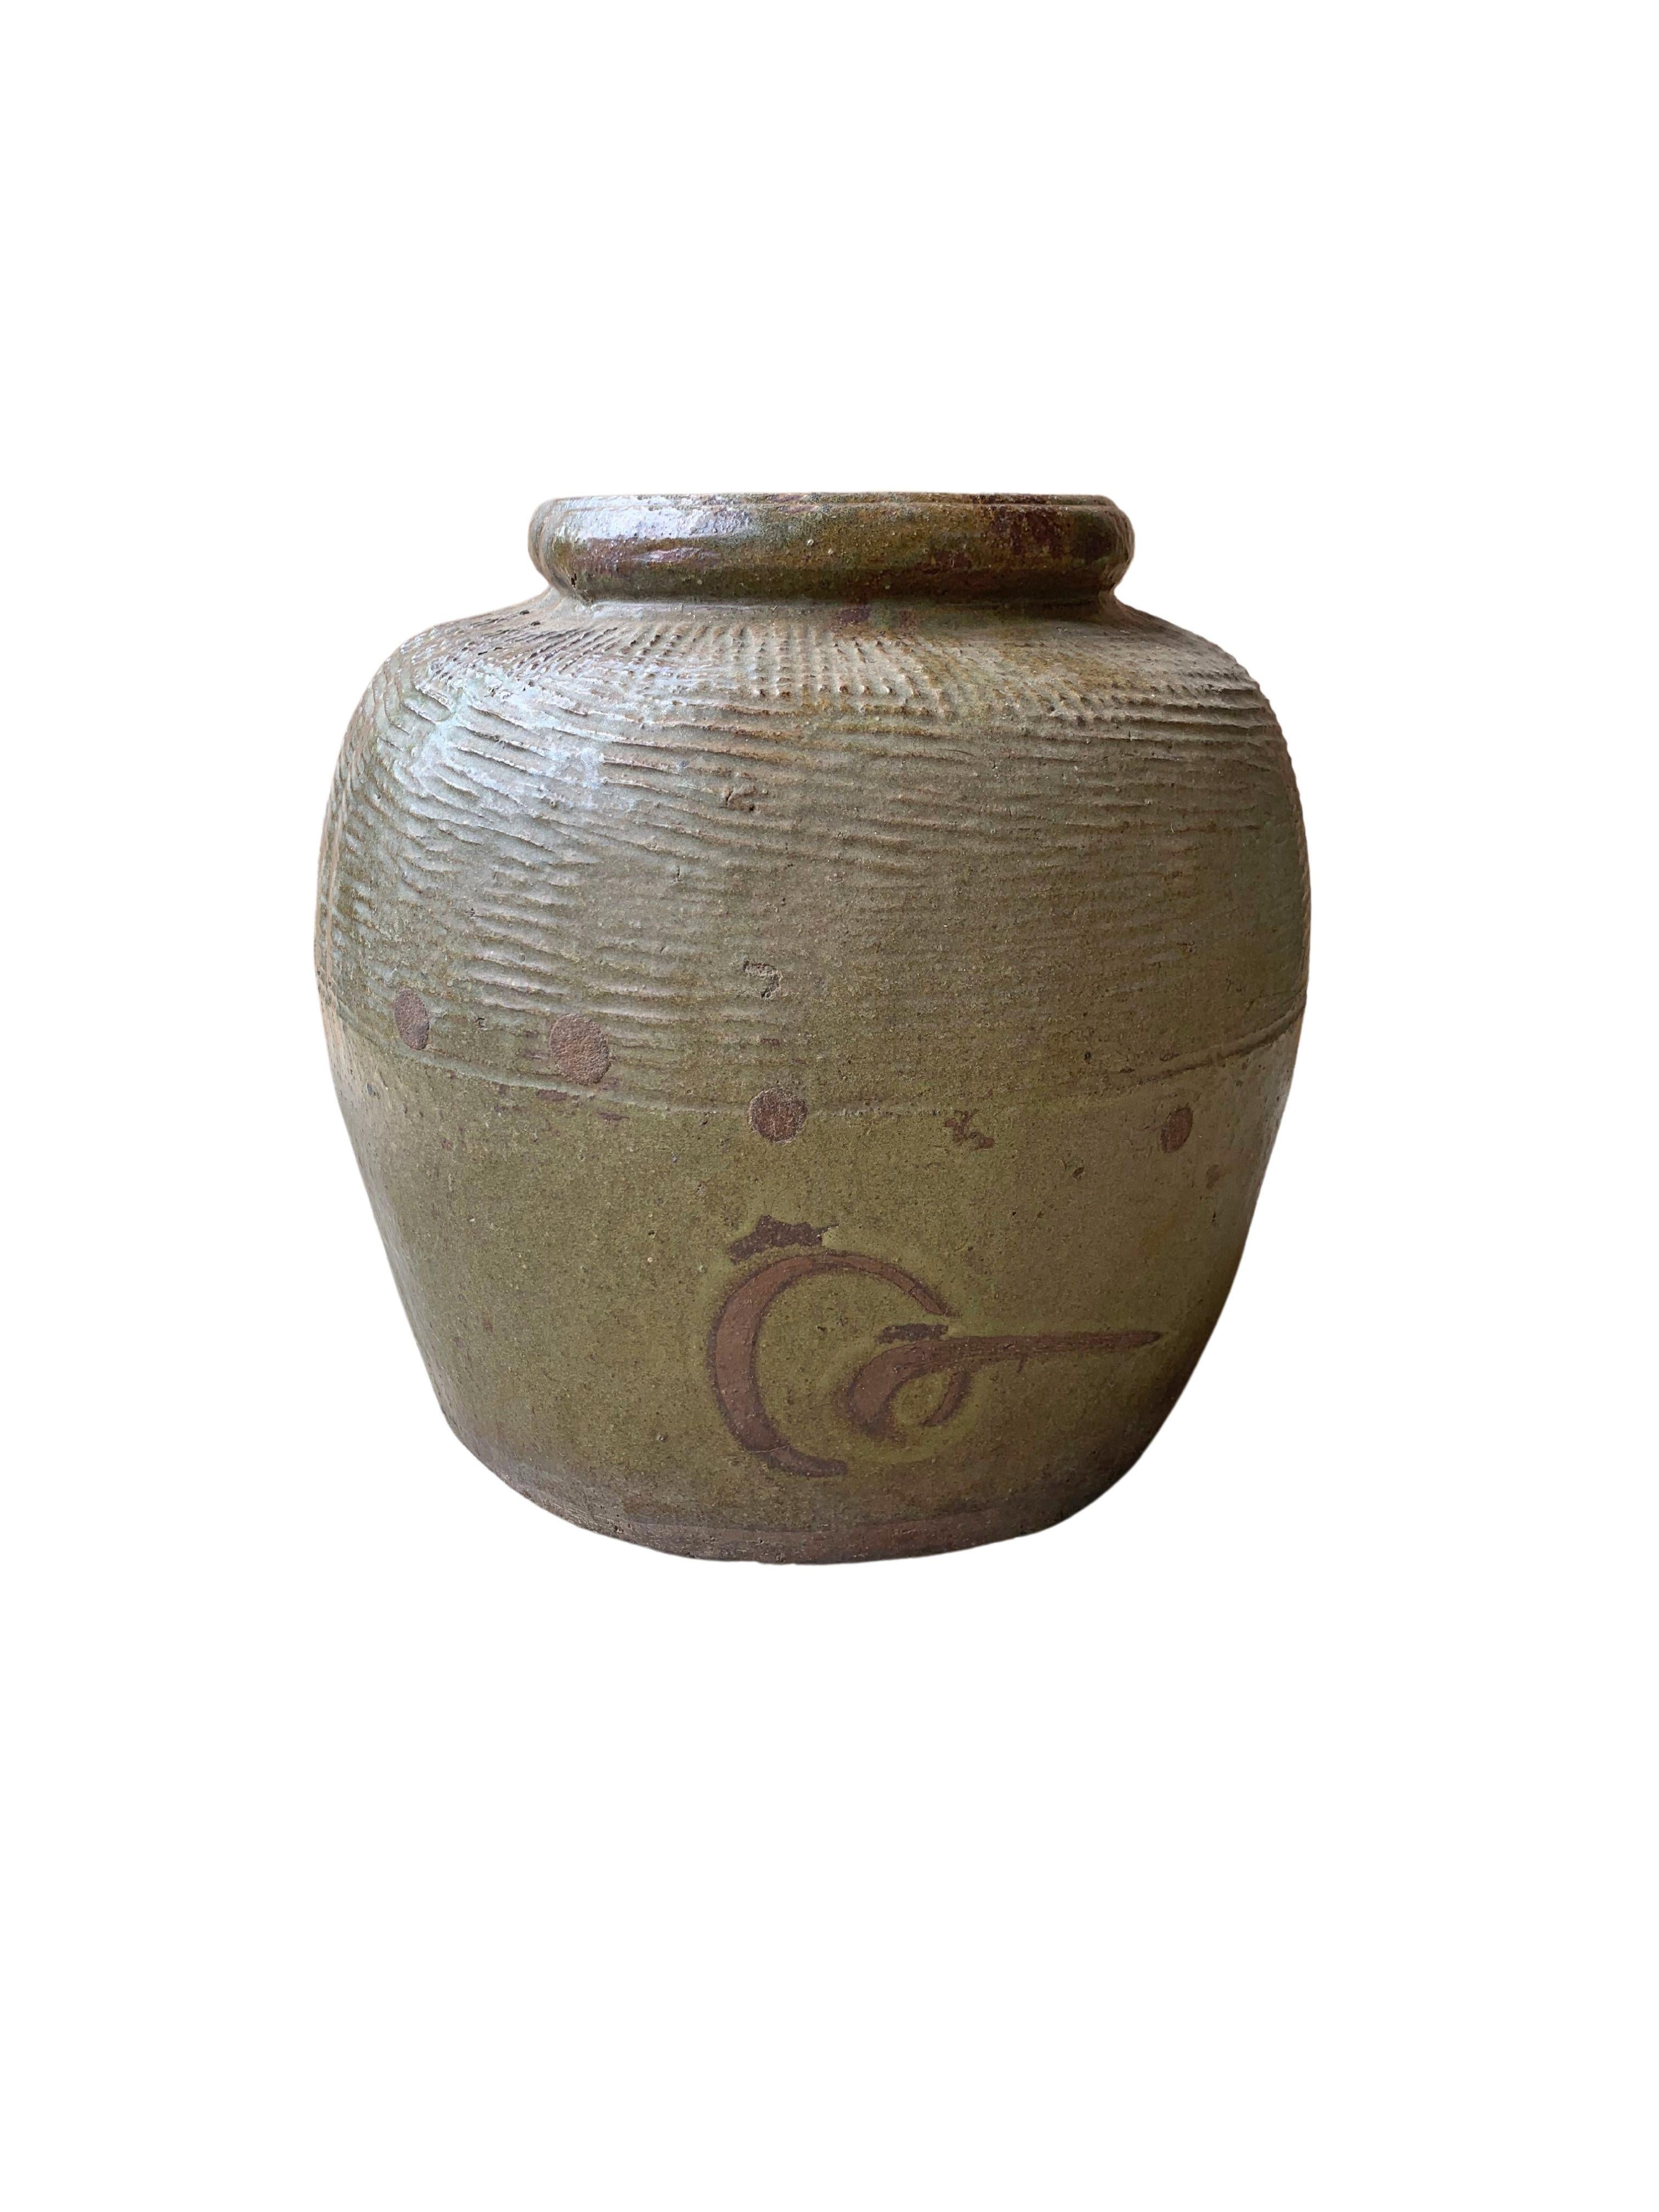 Dieses glasierte chinesische Keramikgefäß wurde früher zum Einlegen von Lebensmitteln verwendet. Es hat eine jadegrüne Oberfläche und eine gerippte Außenseite, die sich durch ihre Struktur auszeichnet. Ein großartiges Beispiel chinesischer Keramik,